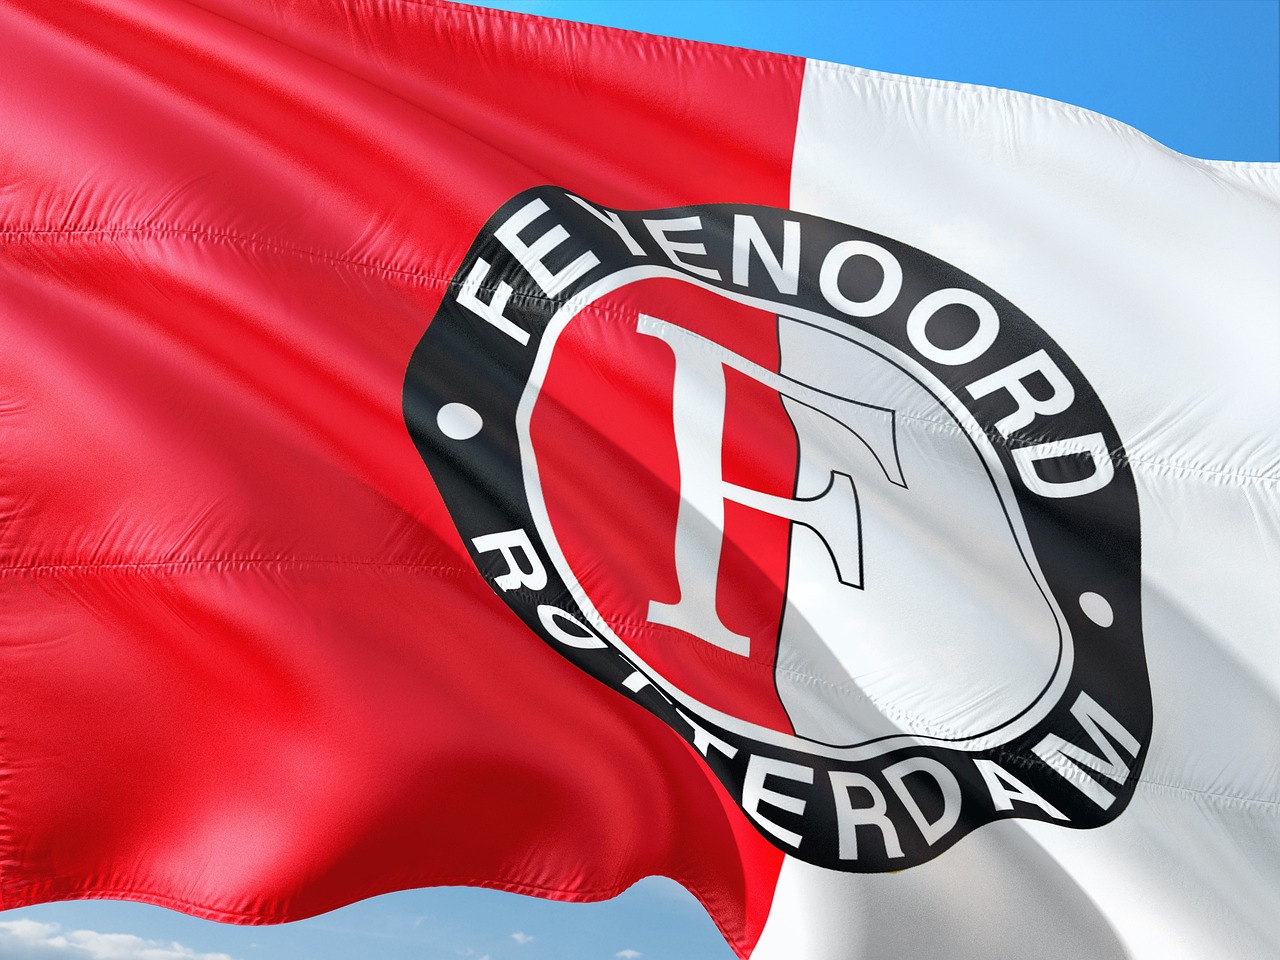 Tips om Feyenoord ook in de winter te steunen